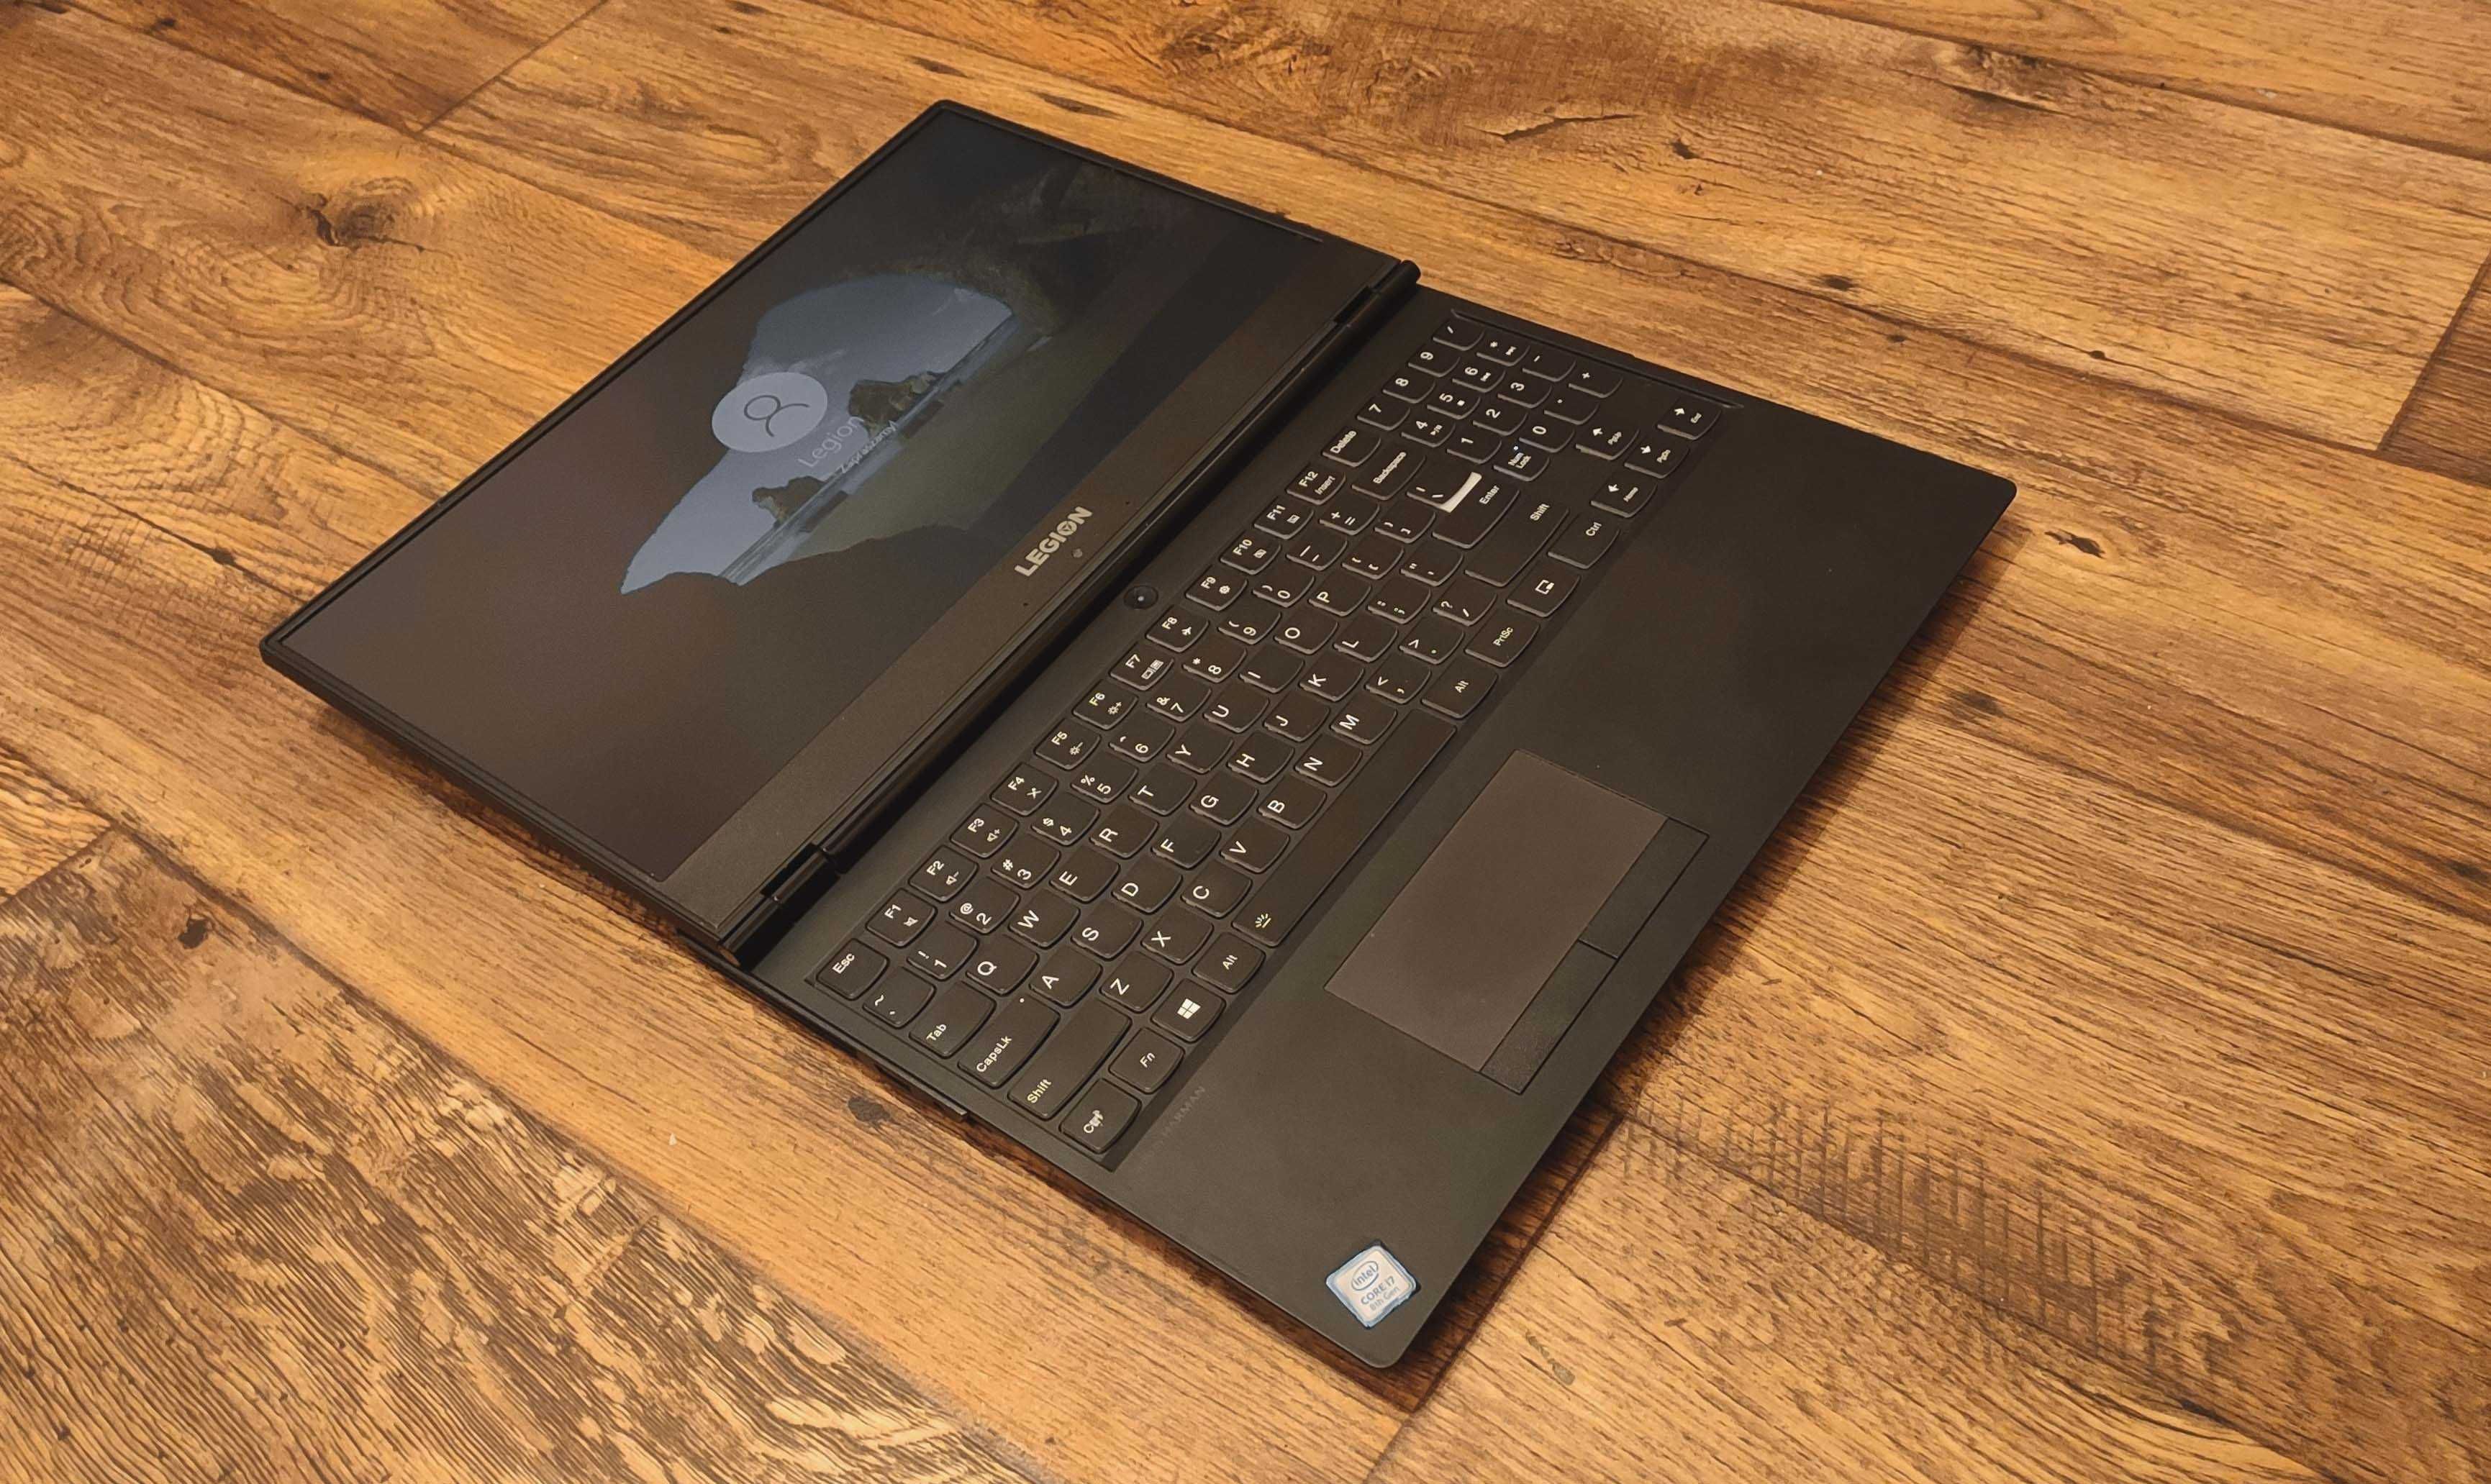 Laptop Lenovo Legion Y530 i7 GTX1060 16GB RAM 1000 HDD + 500 SSD